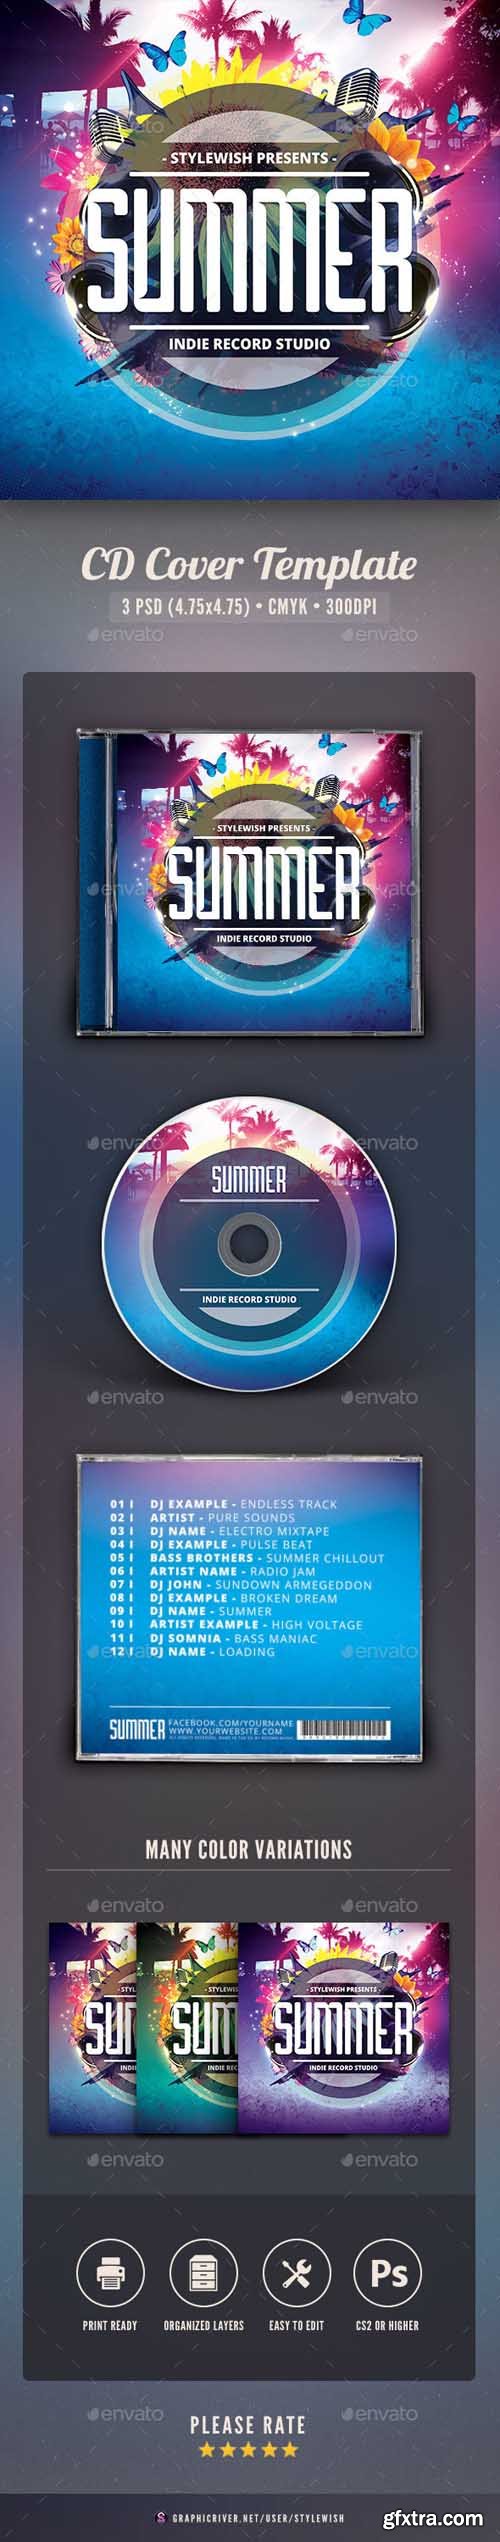 GR - Summer CD Cover Artwork 16043948